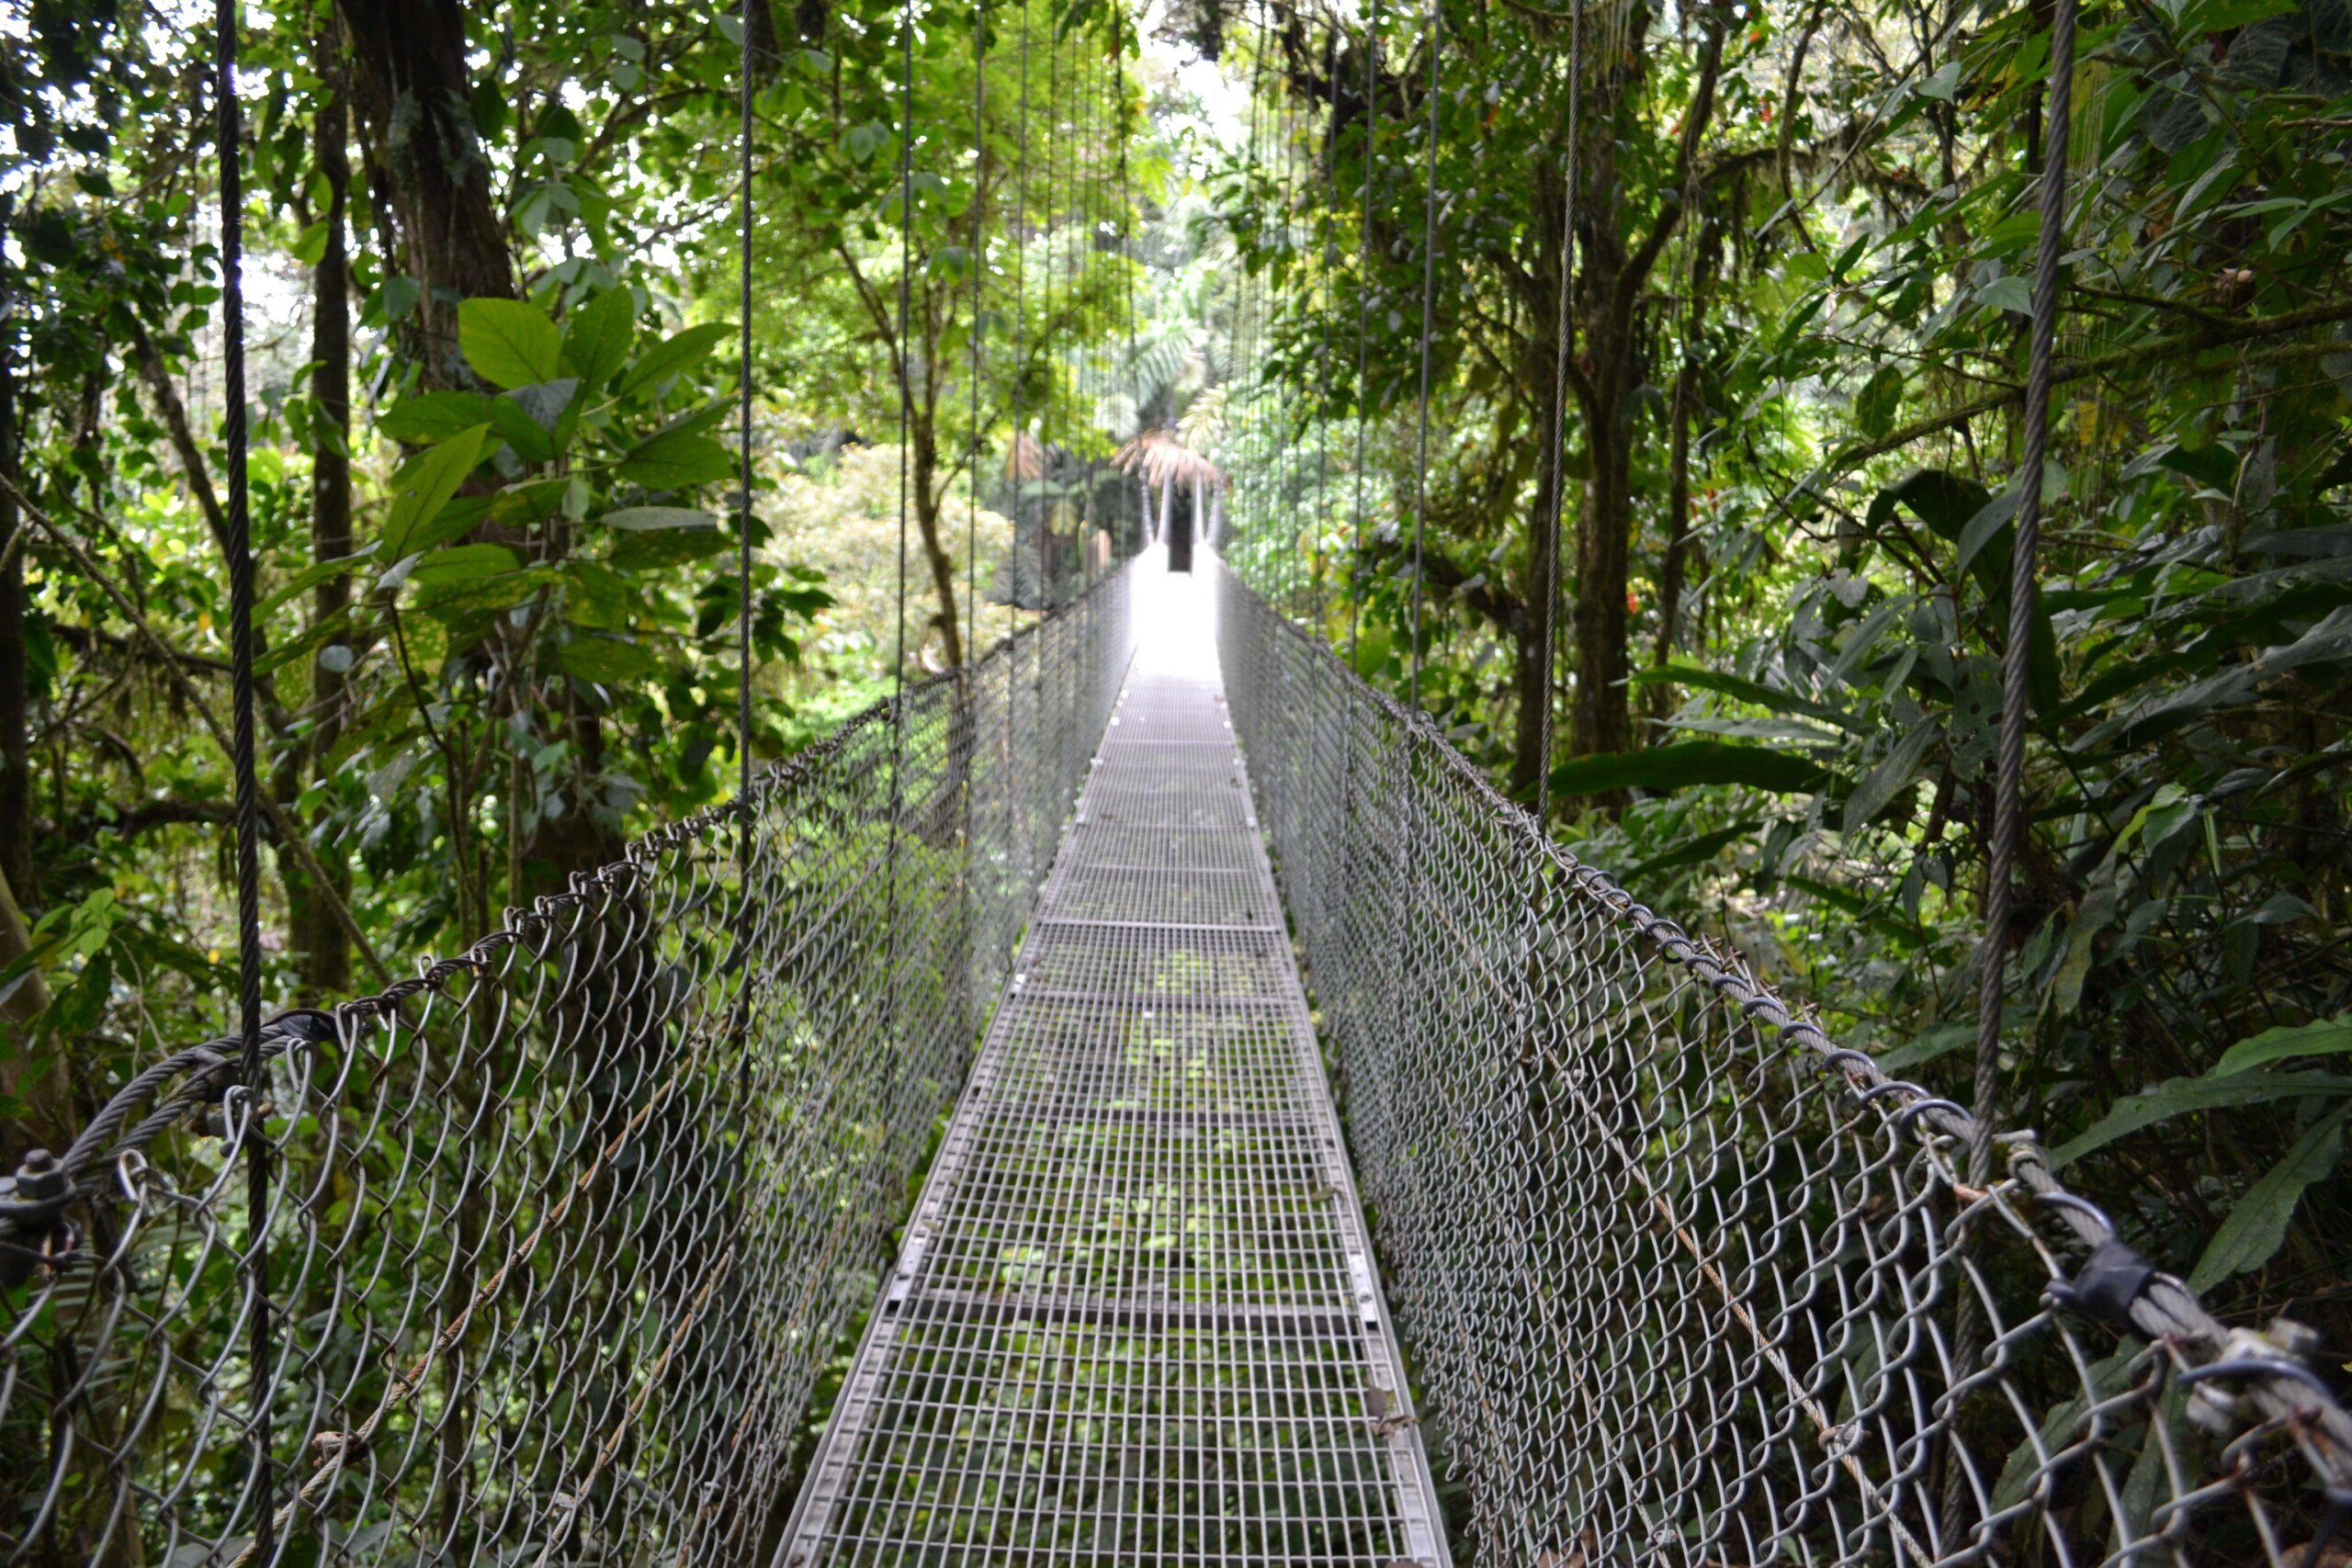 Conheça três destinos internacionais para visitar no Dia do Turismo Ecológico | Ponte suspensa próxima ao vulcão Arenal em Monteverde - Costa Rica | Conexão123